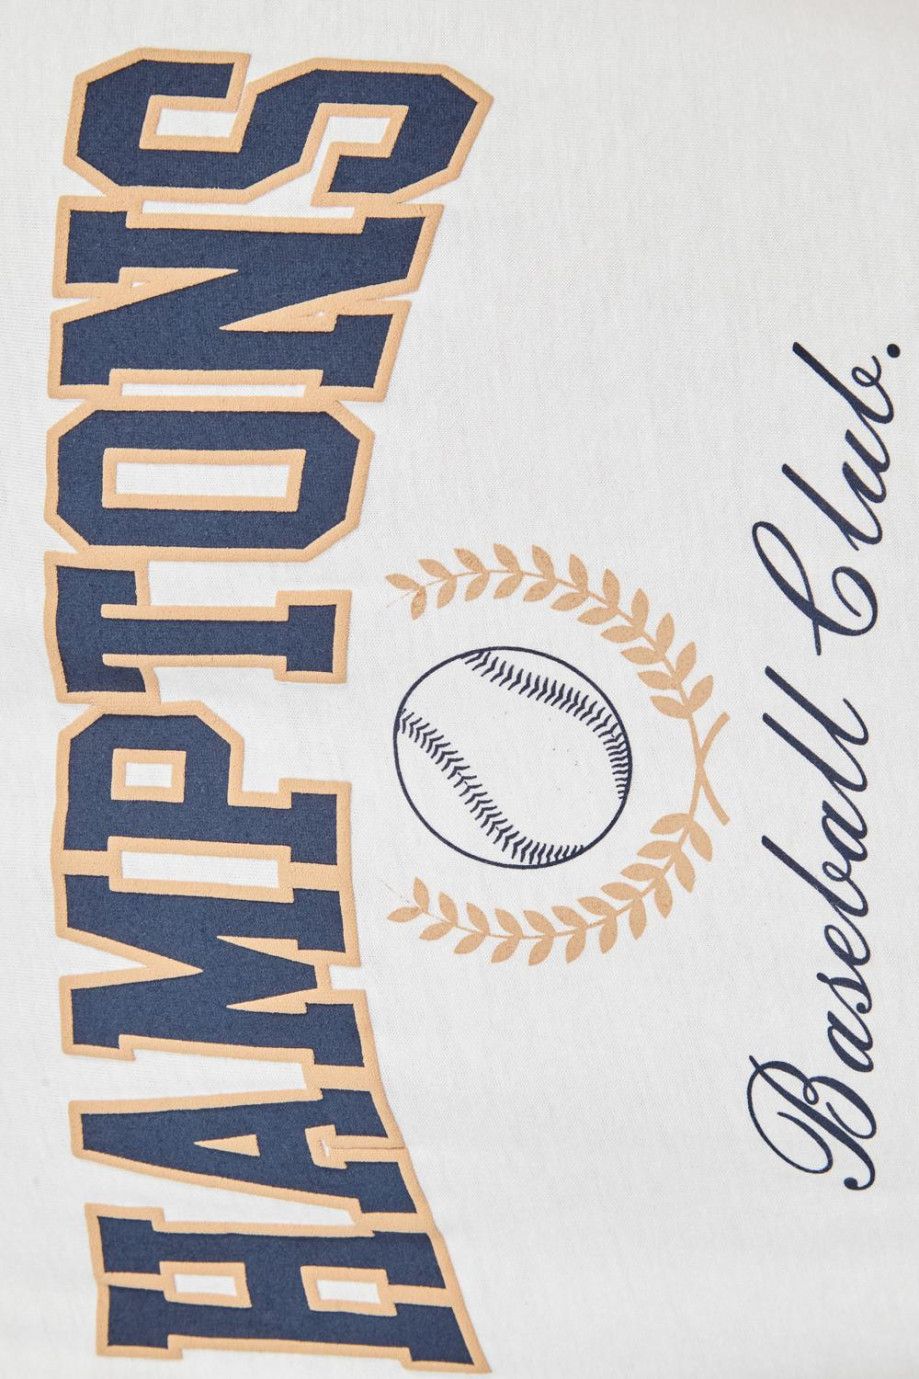 Camiseta crema clara con estampado college de beisbol y cuello redondo